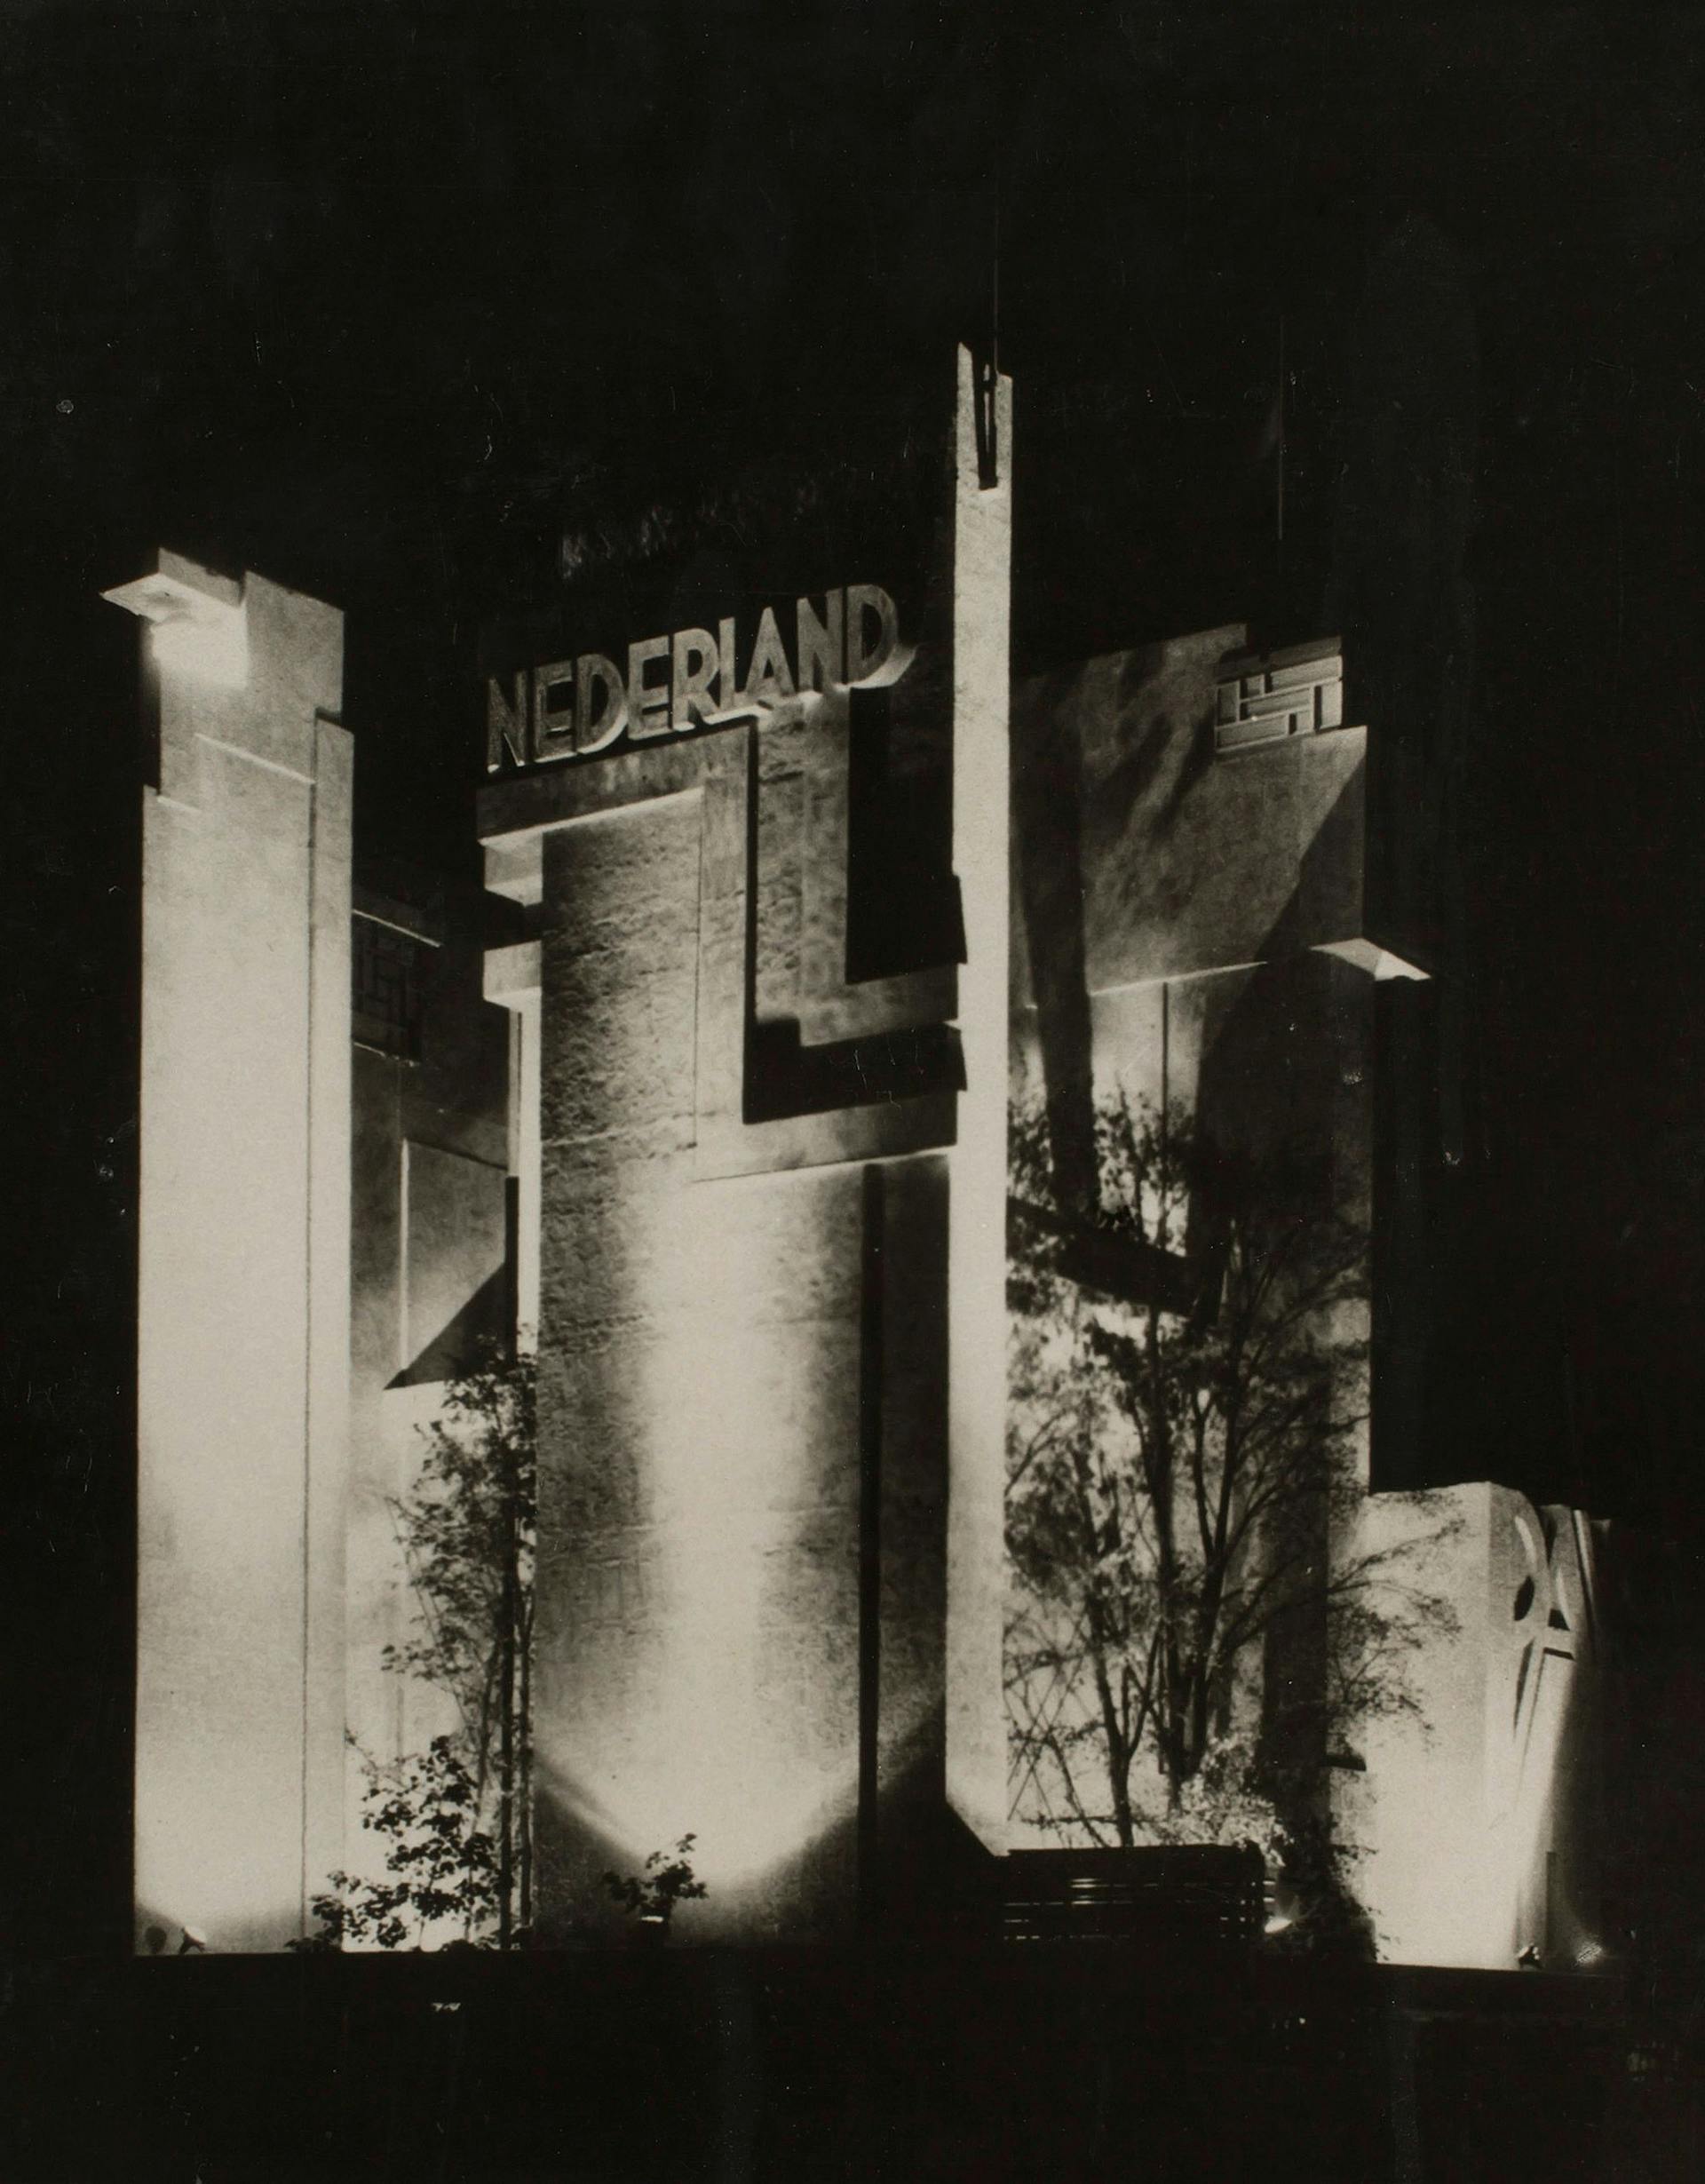  Nederlands paviljoen Wereldtentoonstelling Brussel, België, 1930. Architect: H. Th. Wijdeveld. Fotograaf onbekend. Collectie Het Nieuwe Instituut. 